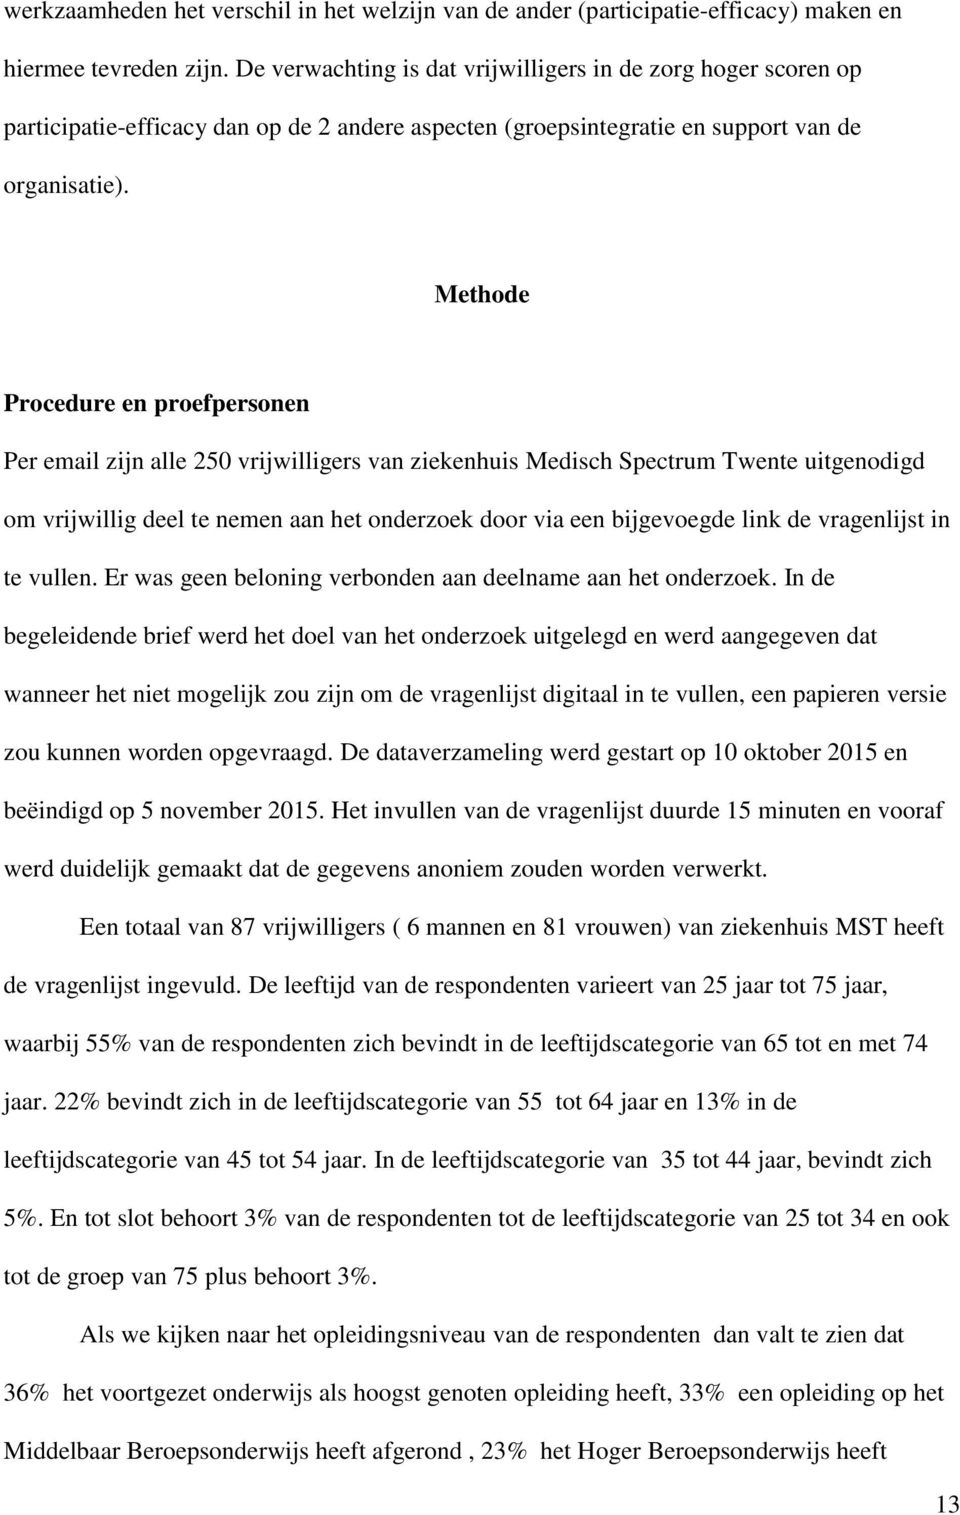 Methode Procedure en proefpersonen Per email zijn alle 250 vrijwilligers van ziekenhuis Medisch Spectrum Twente uitgenodigd om vrijwillig deel te nemen aan het onderzoek door via een bijgevoegde link